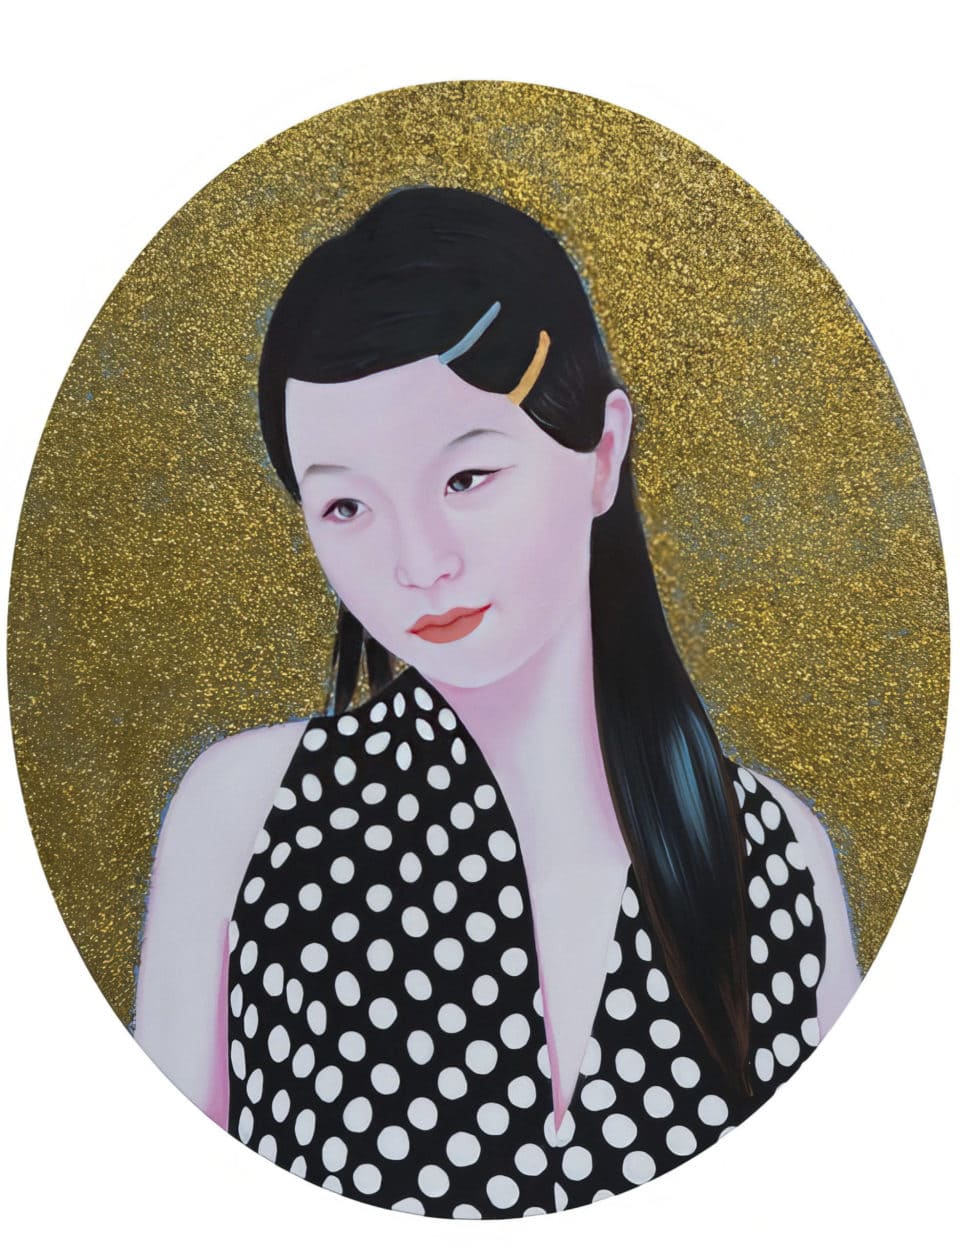 Ziqiao huile et paillettes sur toile oil and glitter on canvas 555x445 cm